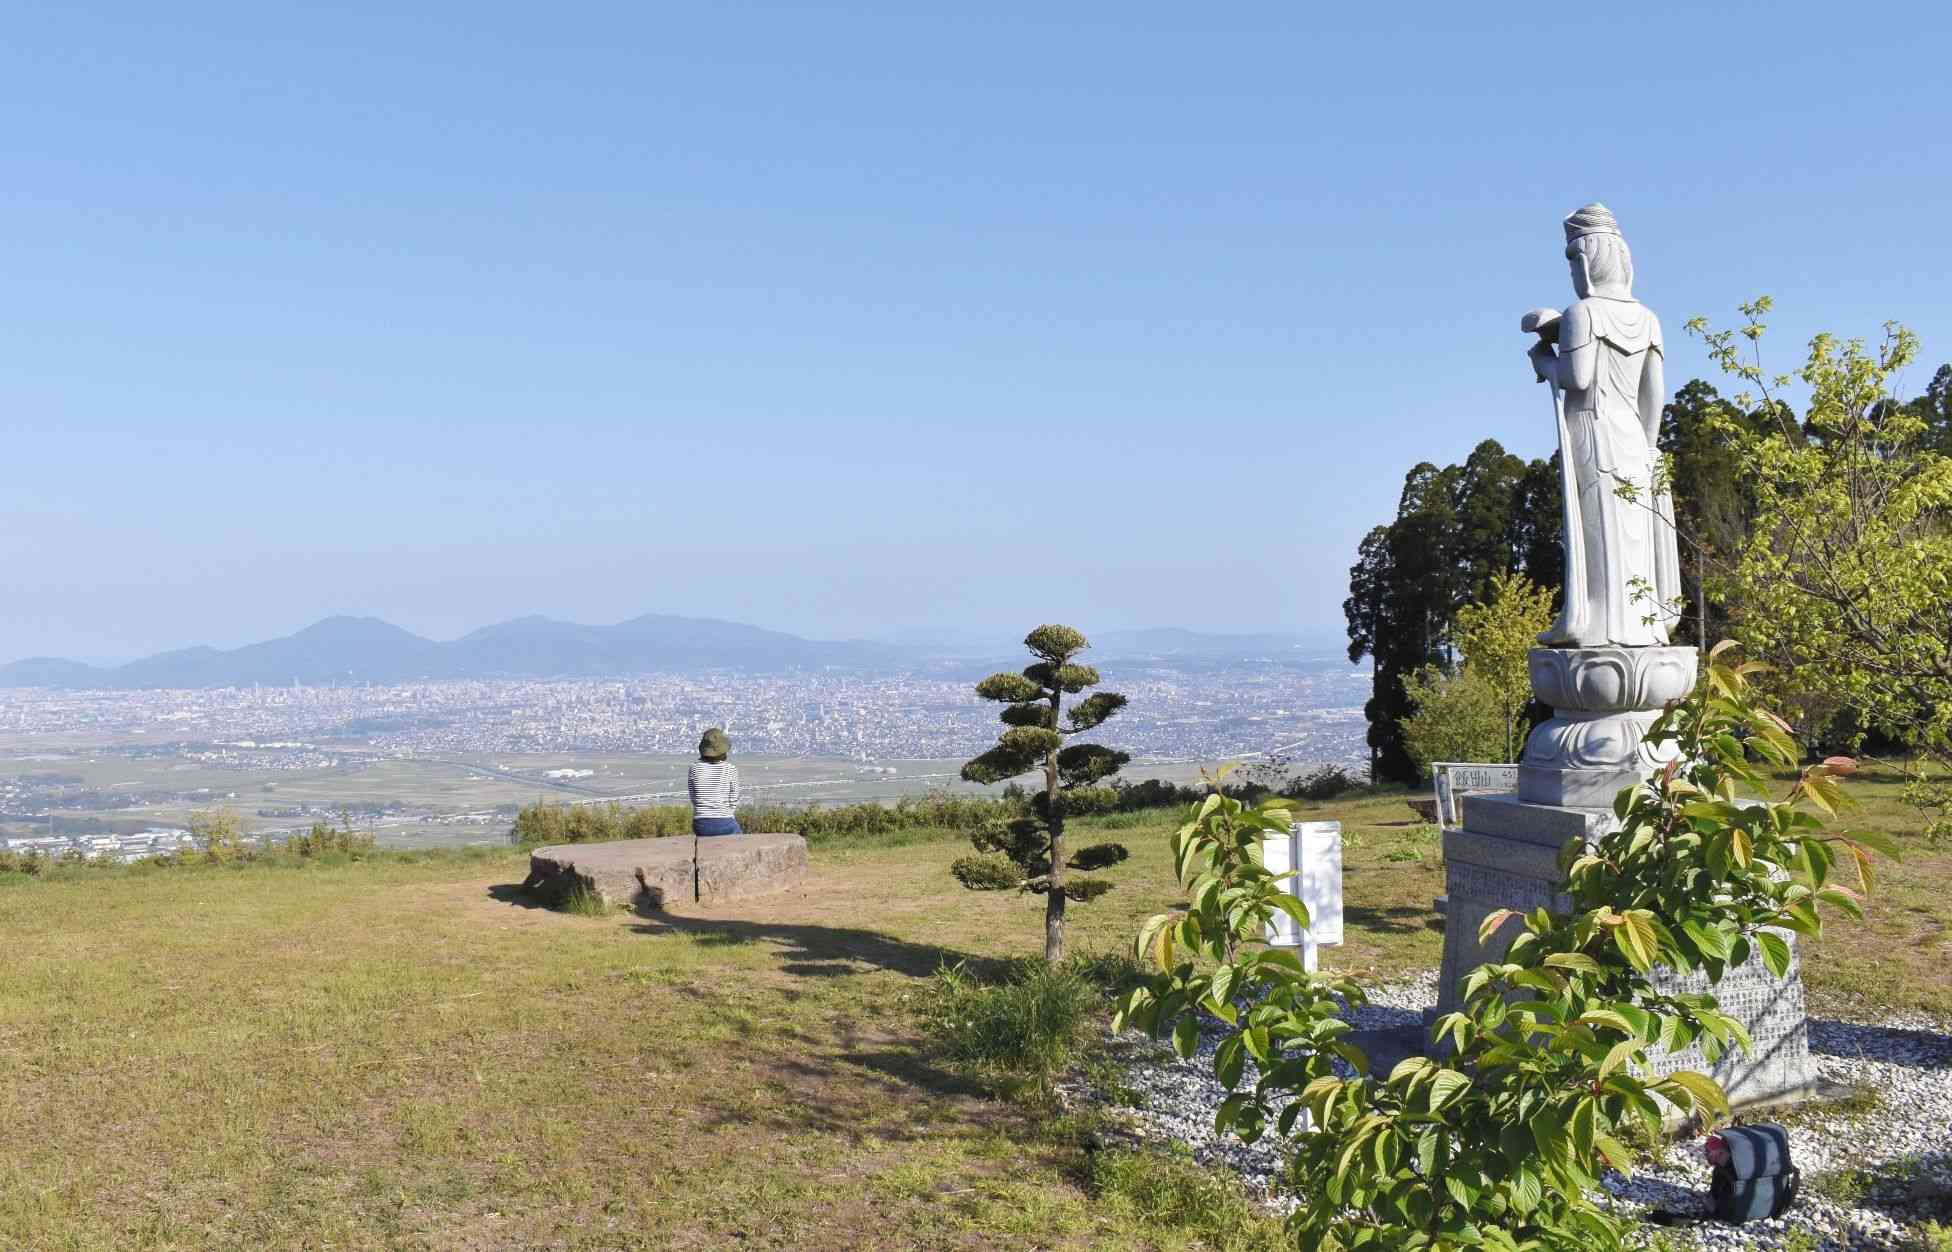 飯田山山頂自然公園から熊本市が一望。正面には金峰山系の山々が見える。山頂には観音像（右）も